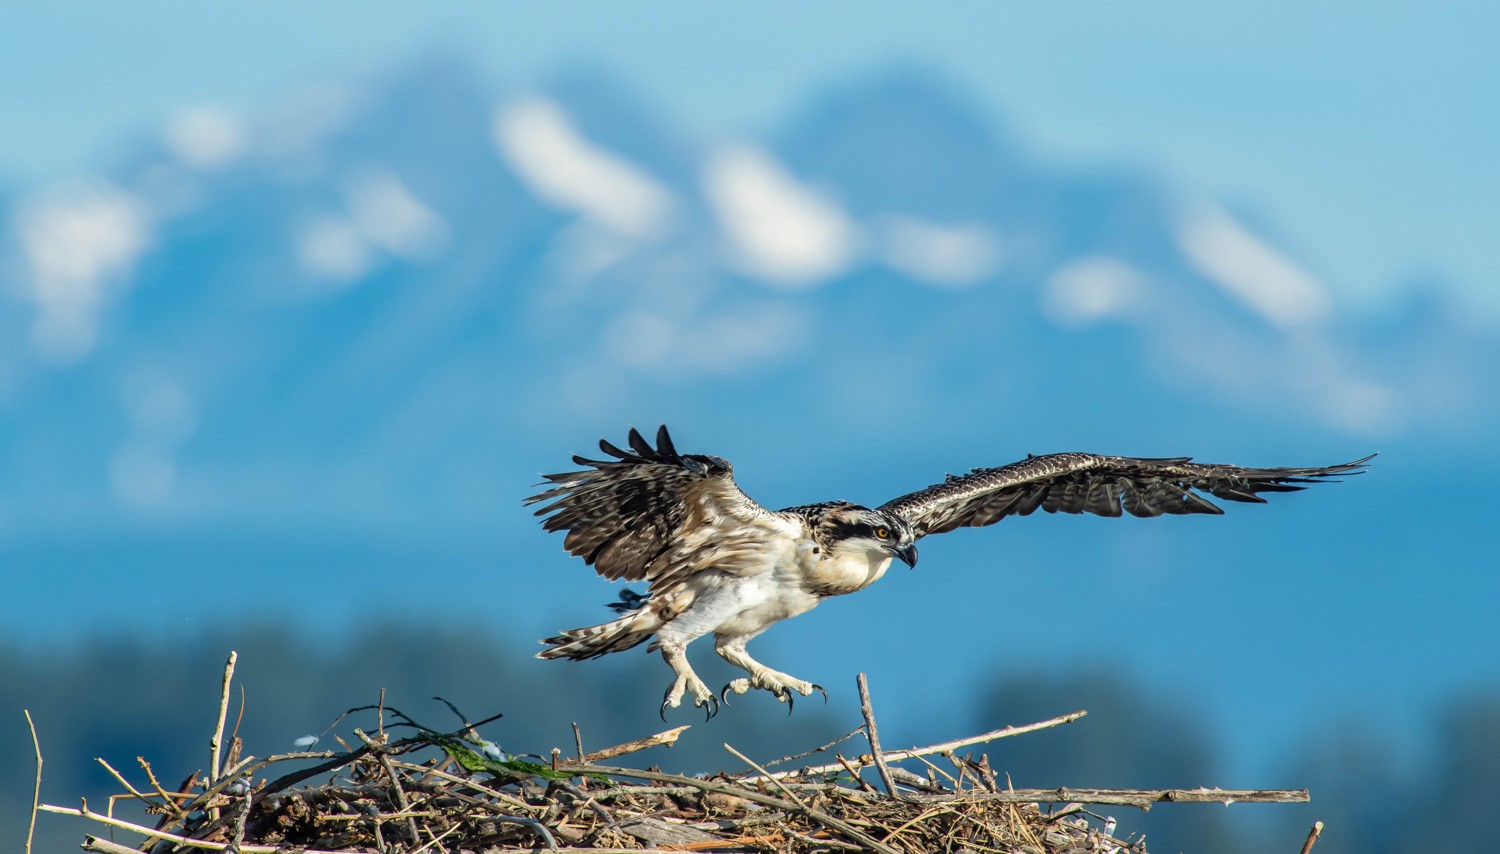 Osprey photo by Greg Thompson